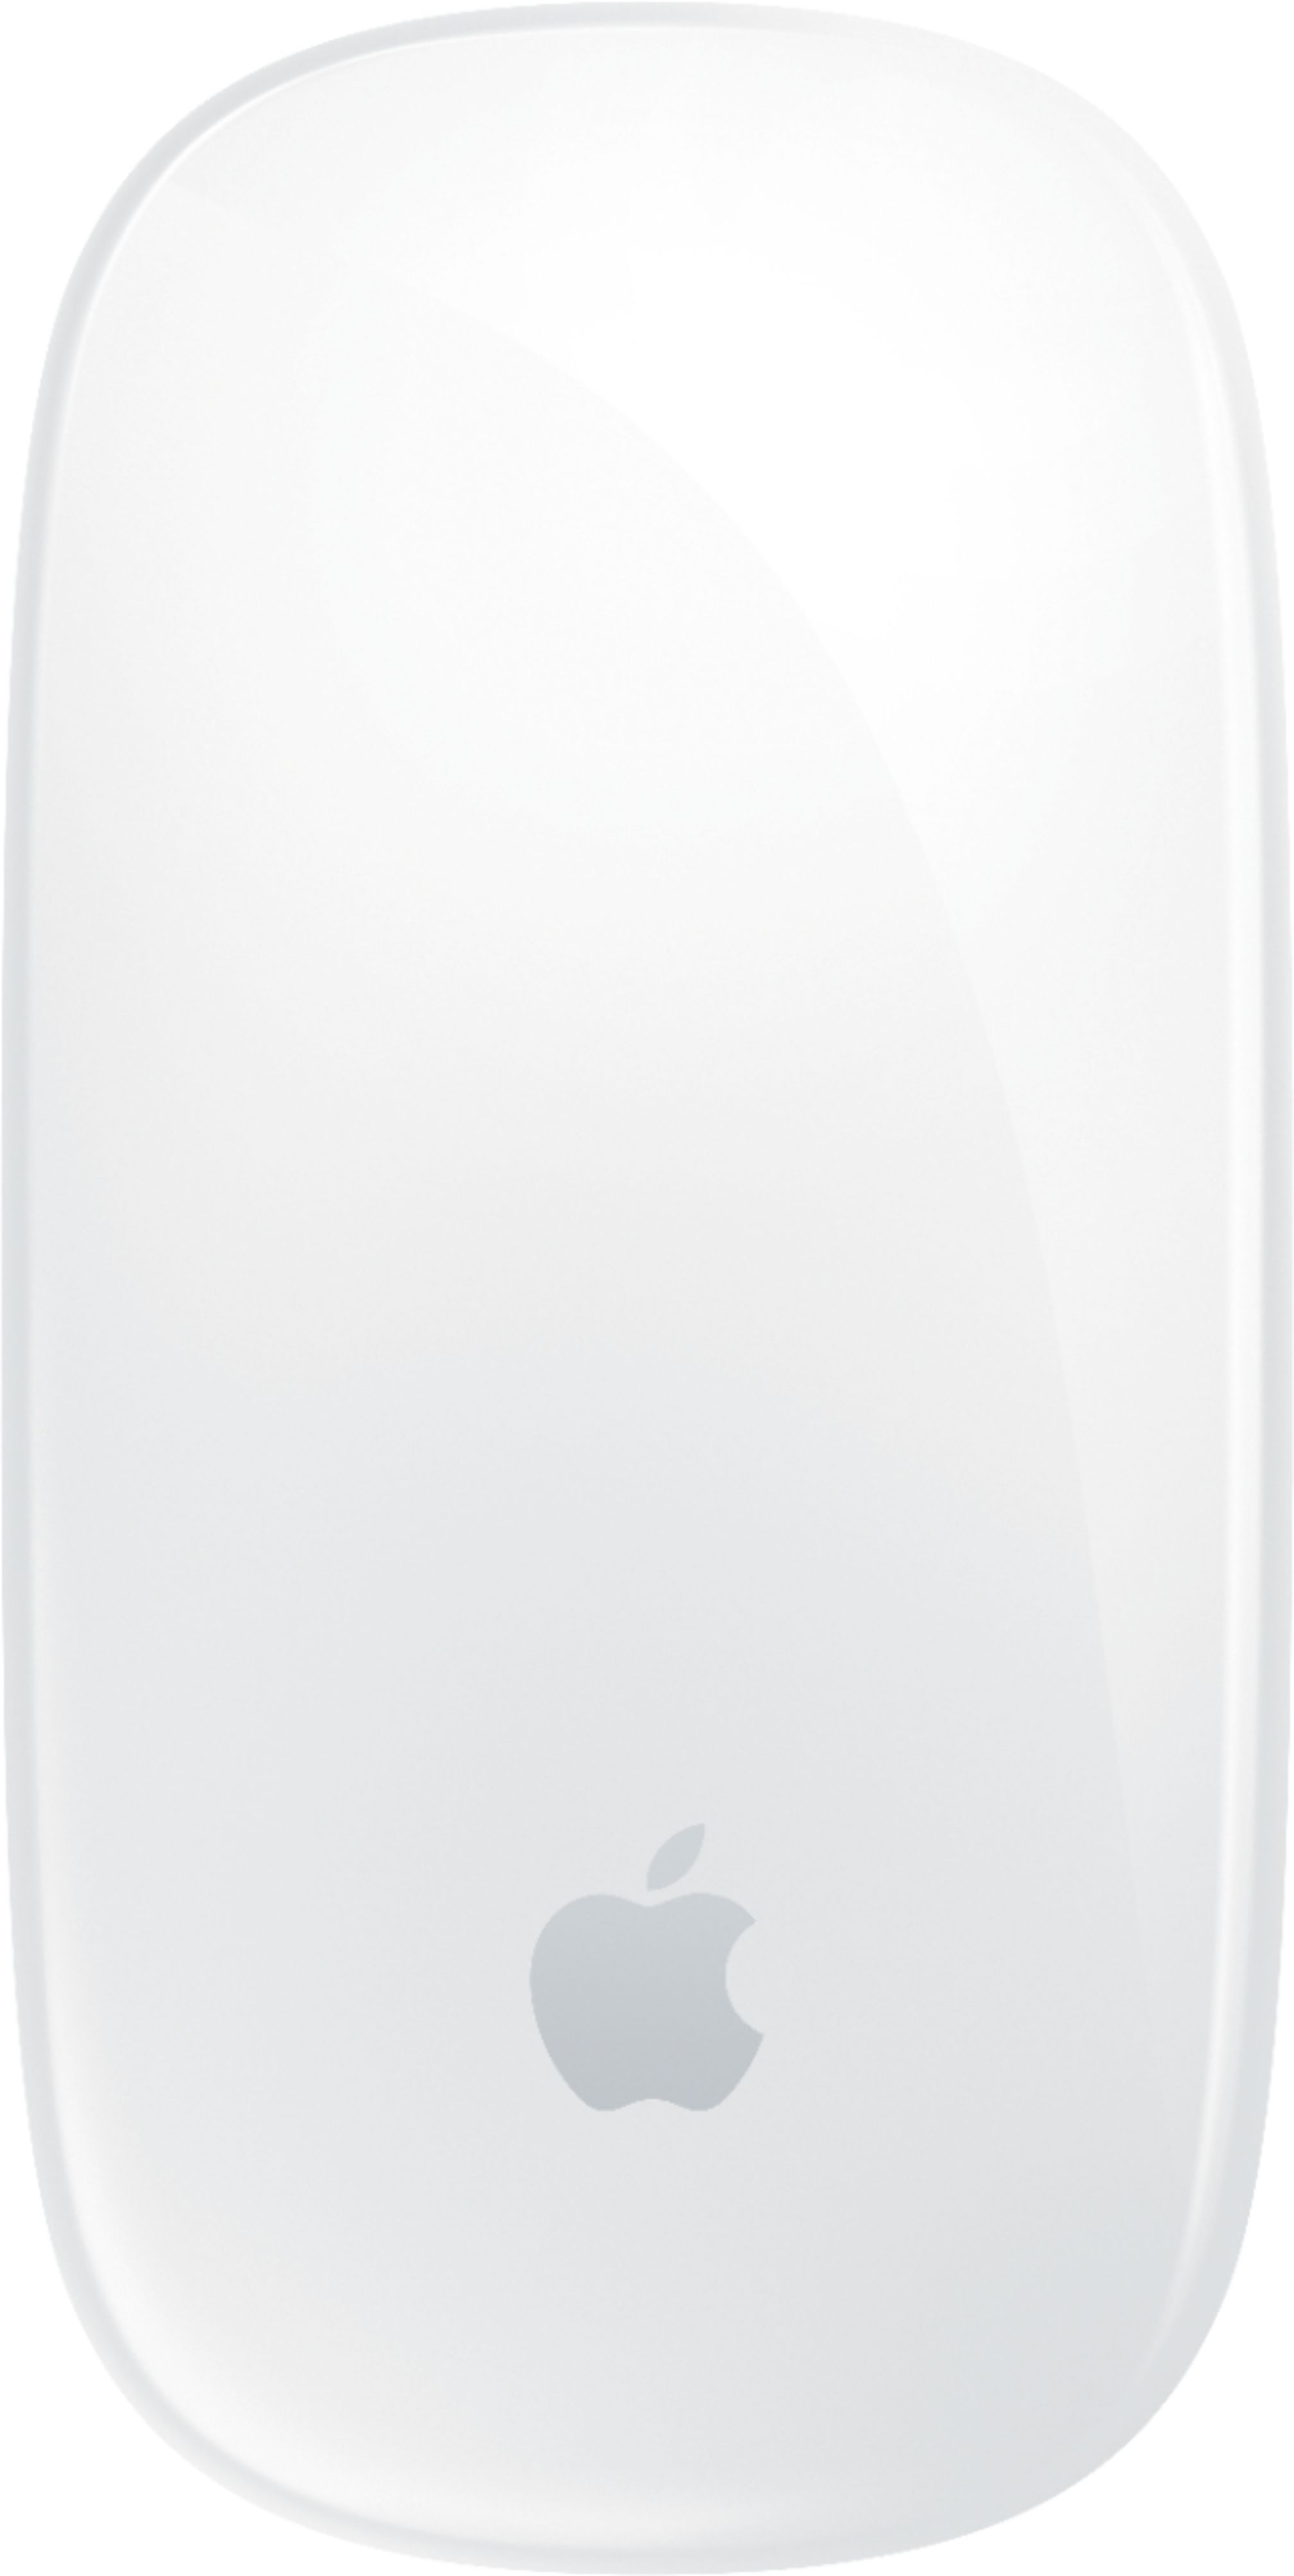 Apple Magic Mouse - Souris sans fil pour Mac - Bluetooth - blanc